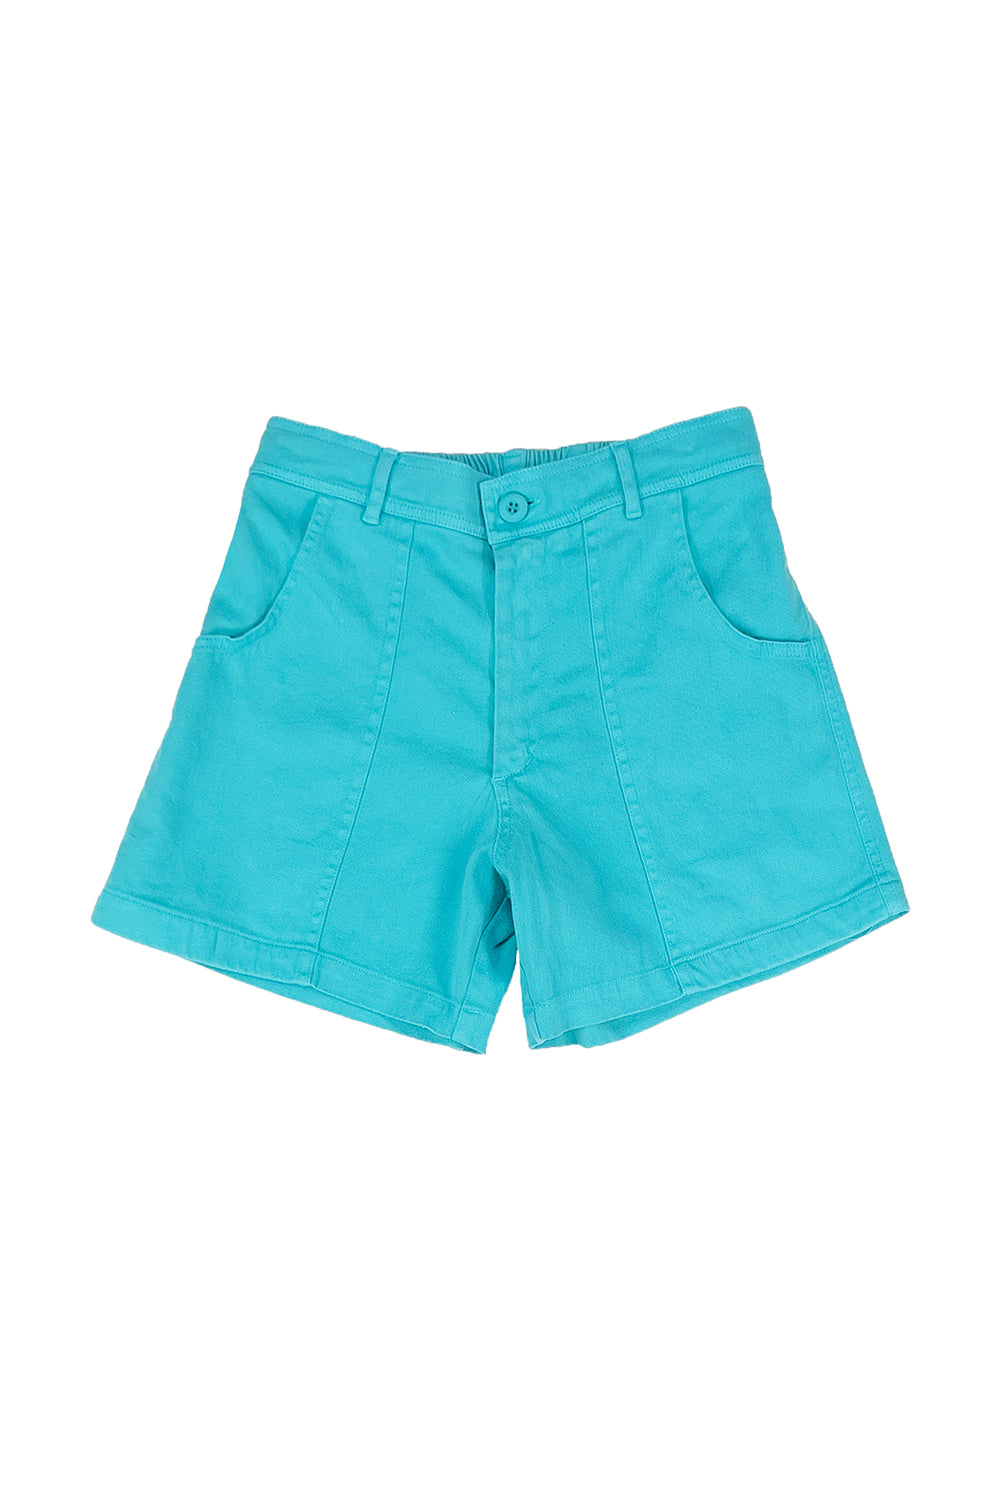 Venice Short - Sale Colors | Jungmaven Hemp Clothing & Accessories / Color: Caribbean Blue